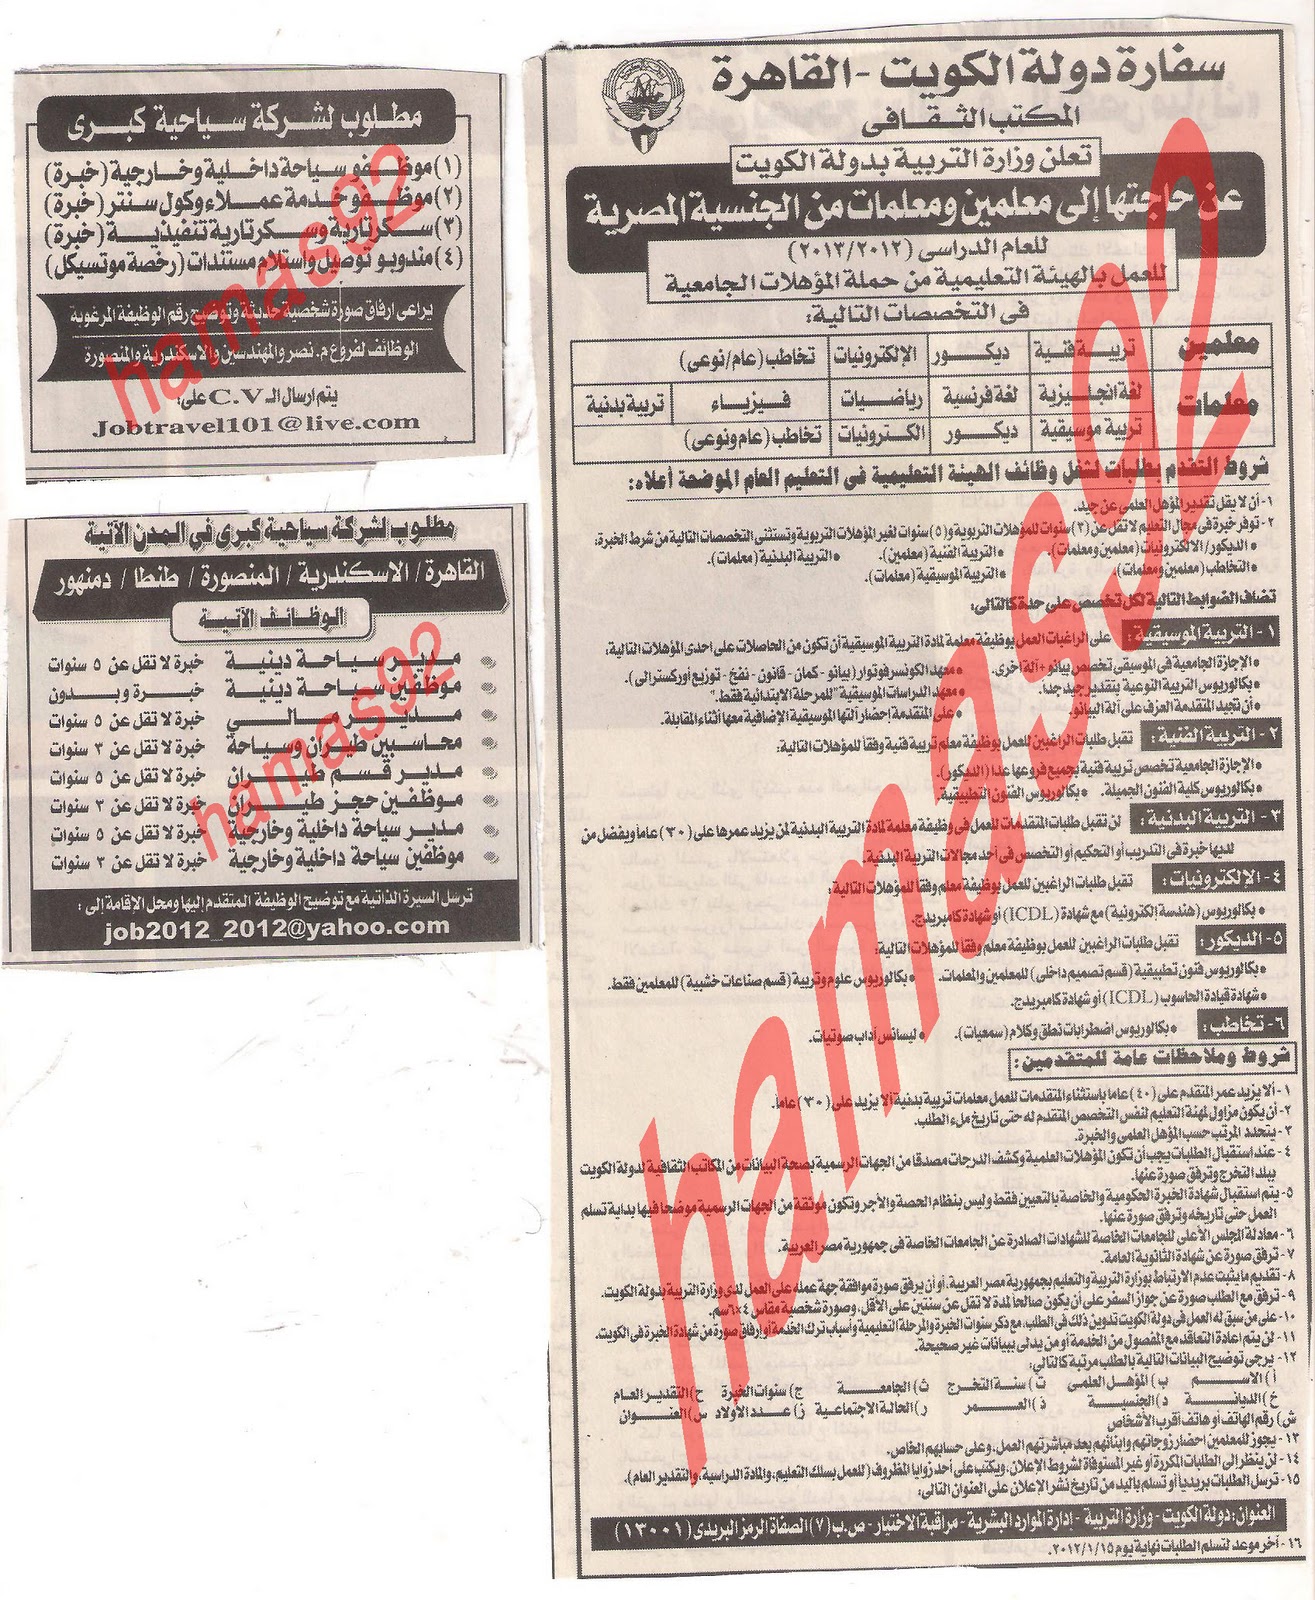 وظائف جريدة الاهرام الخميس 29\12\2011 , مطلوب معلمين لوزارة التربية بالكويت  Picture+001